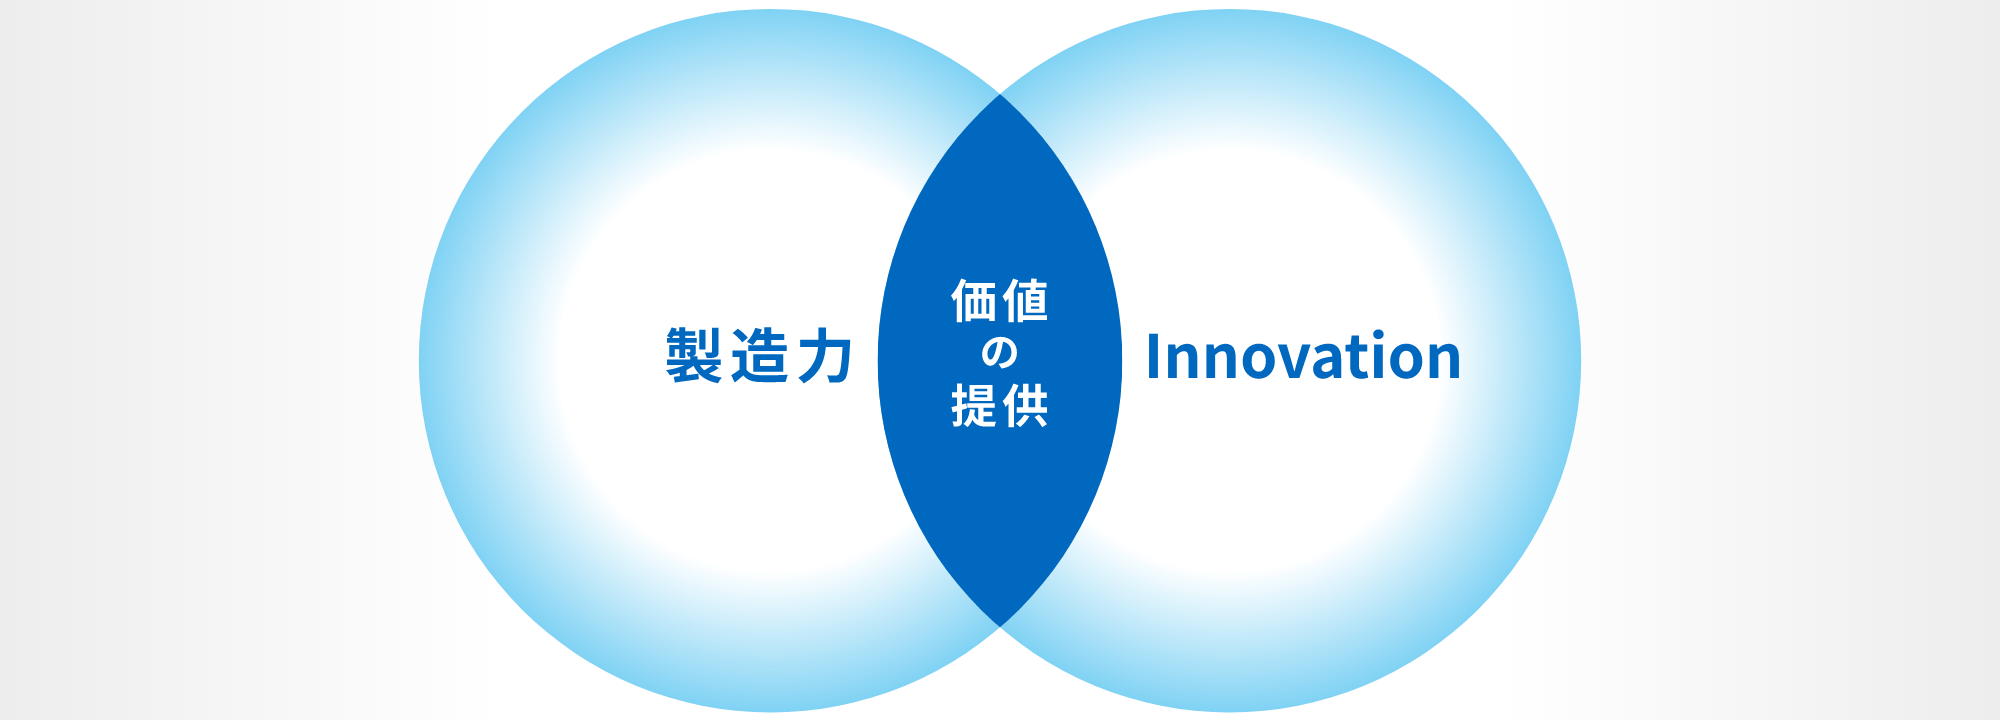 製造力 x Innovation = 価値の創造